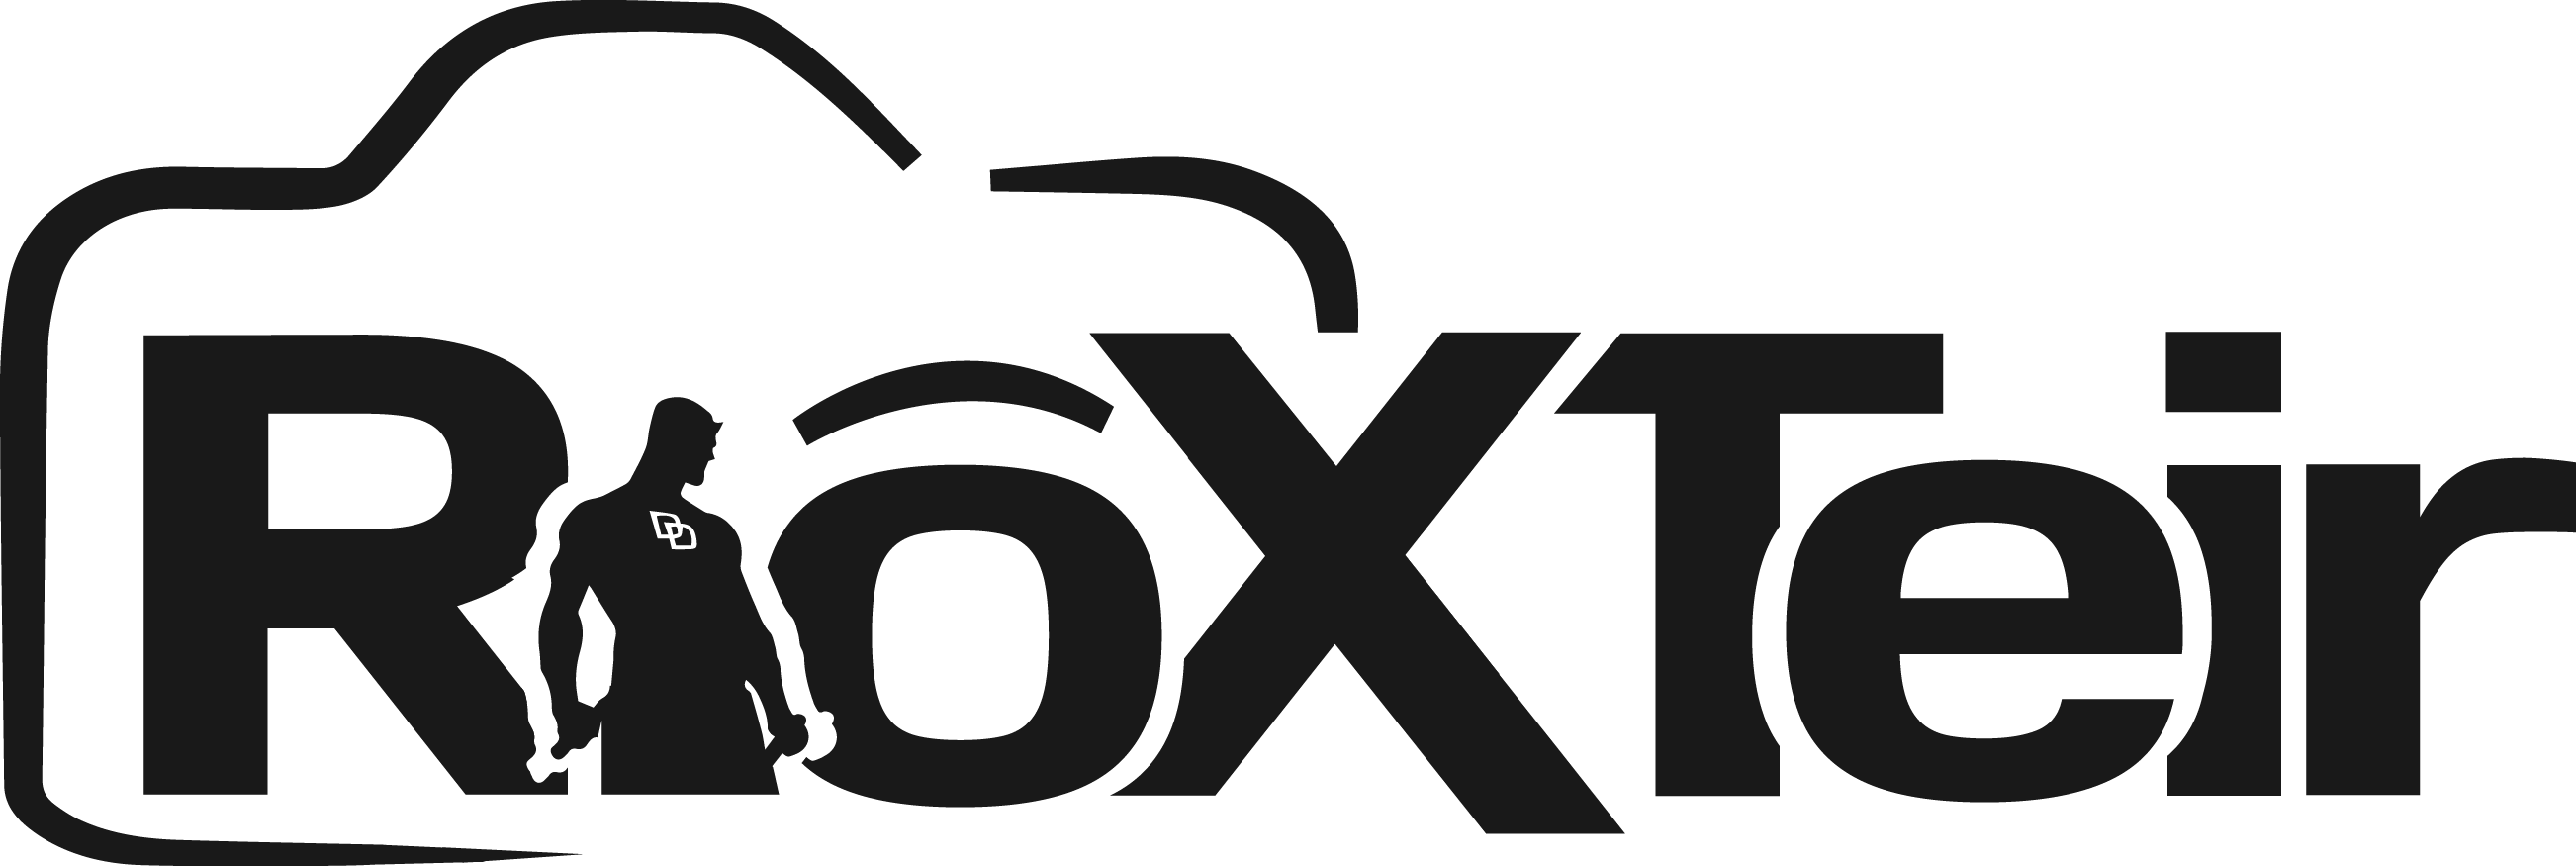 rioxteir.com logo